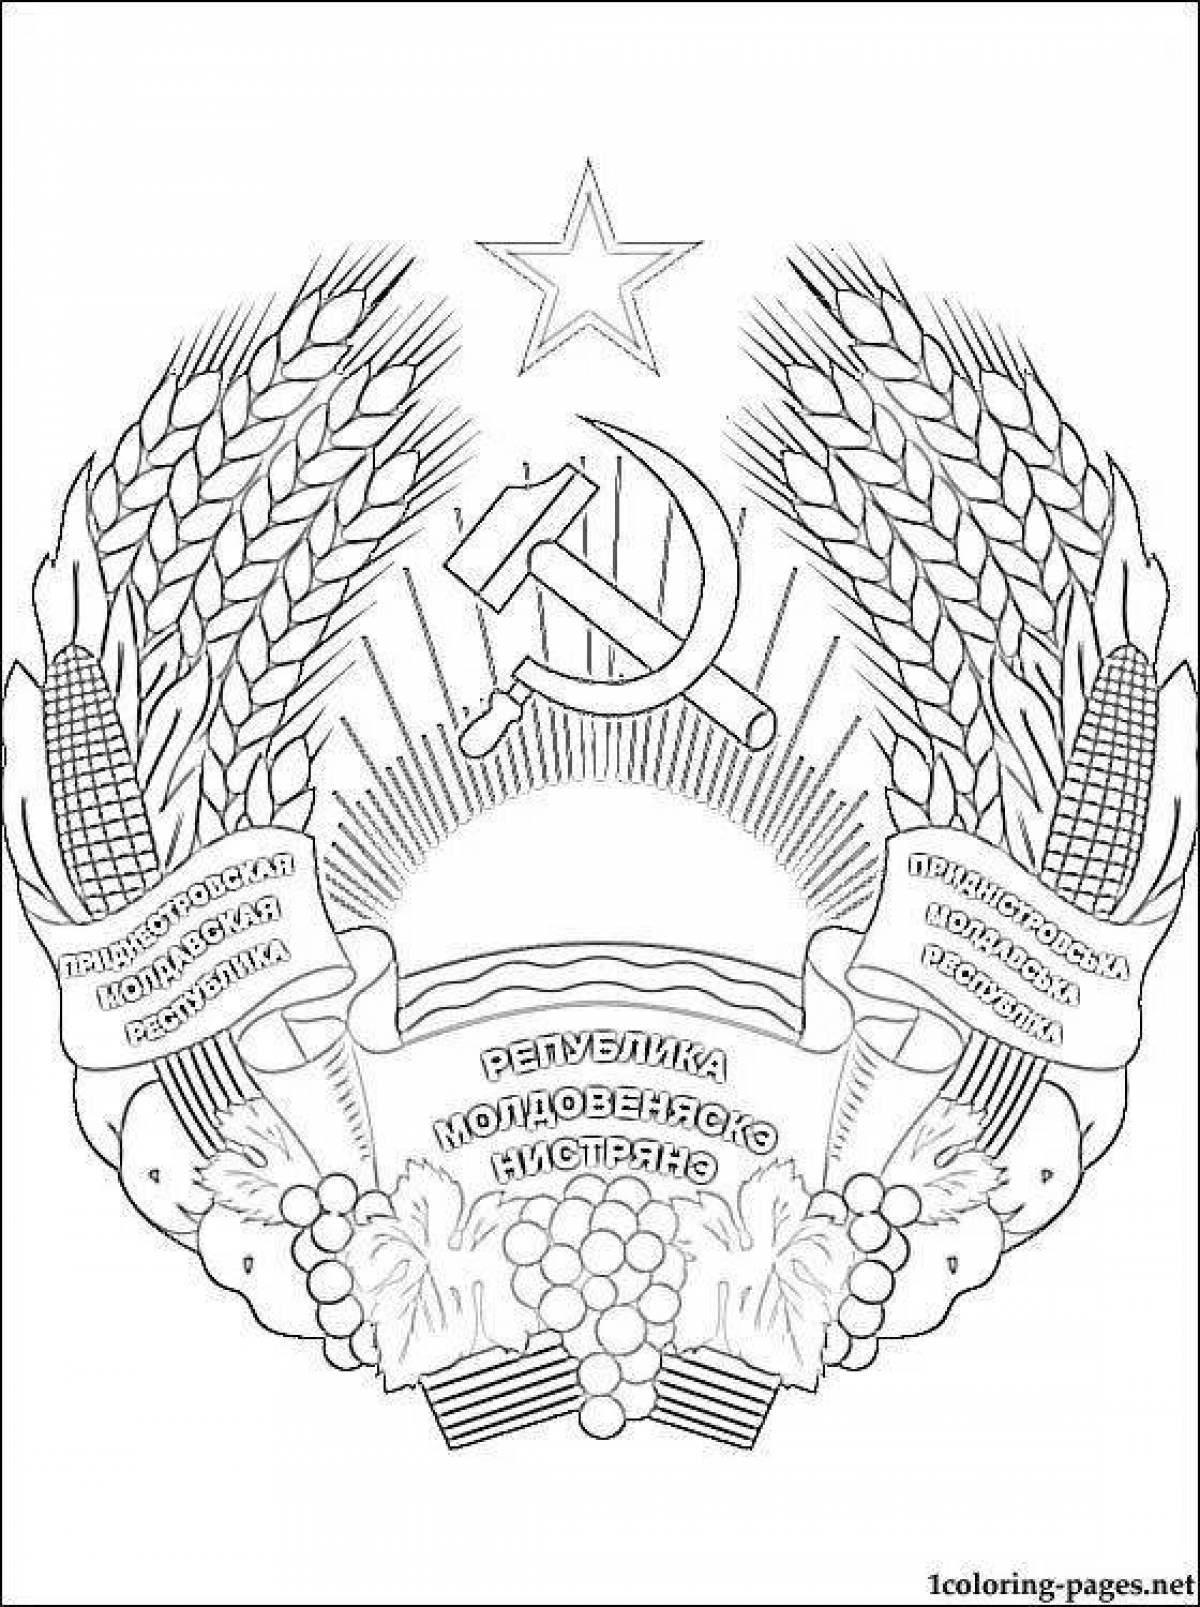 Герб Приднестровской Молдавской Республики